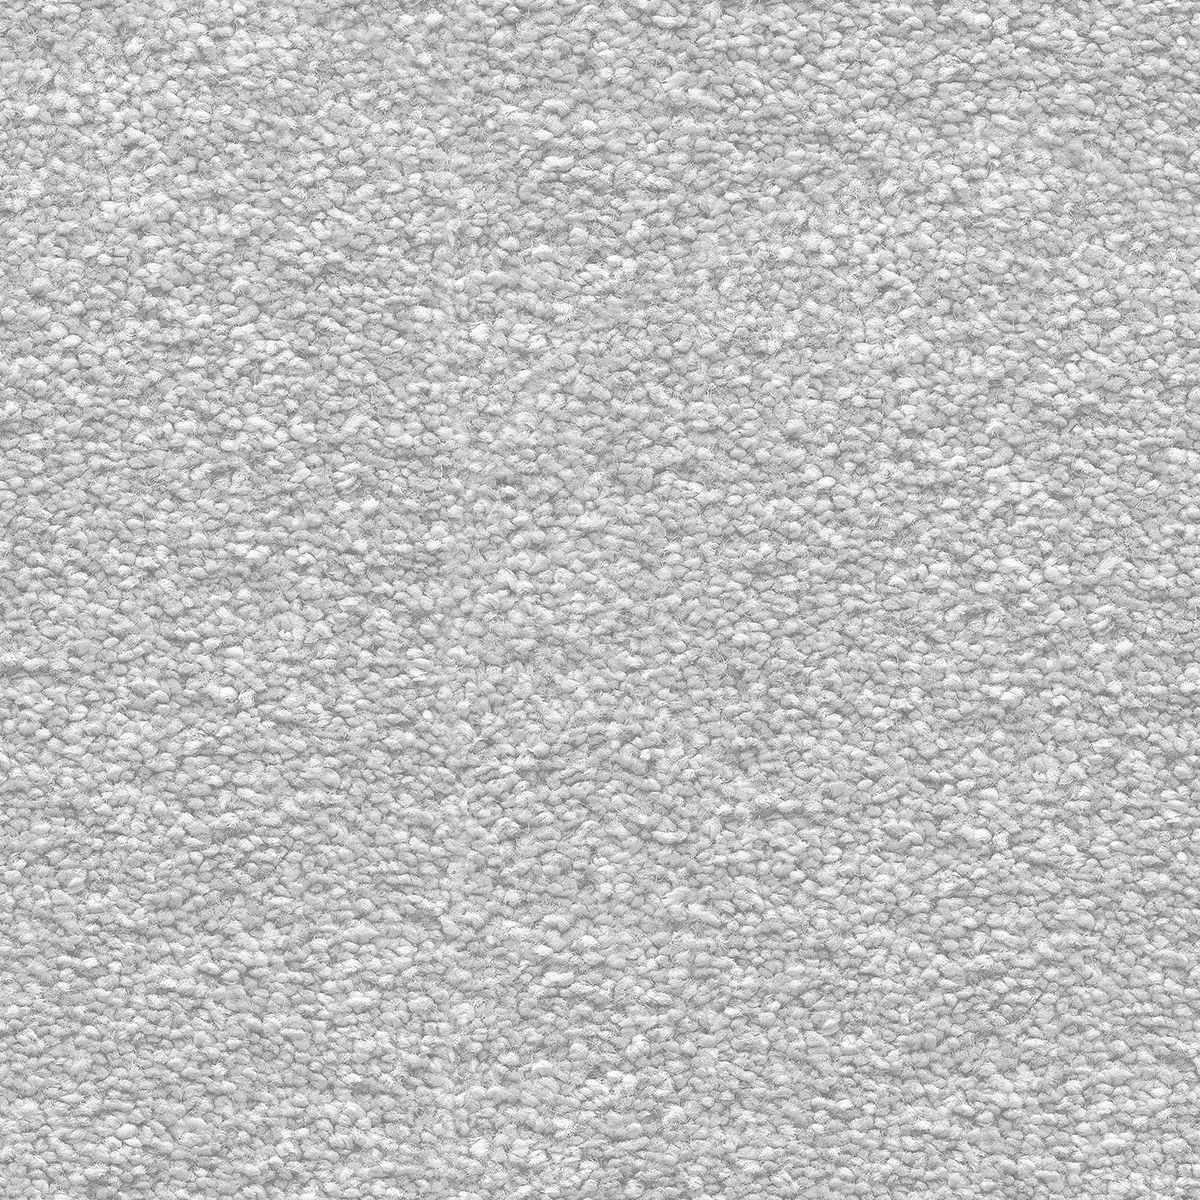 Metrážny koberec SIRIUS perlový 